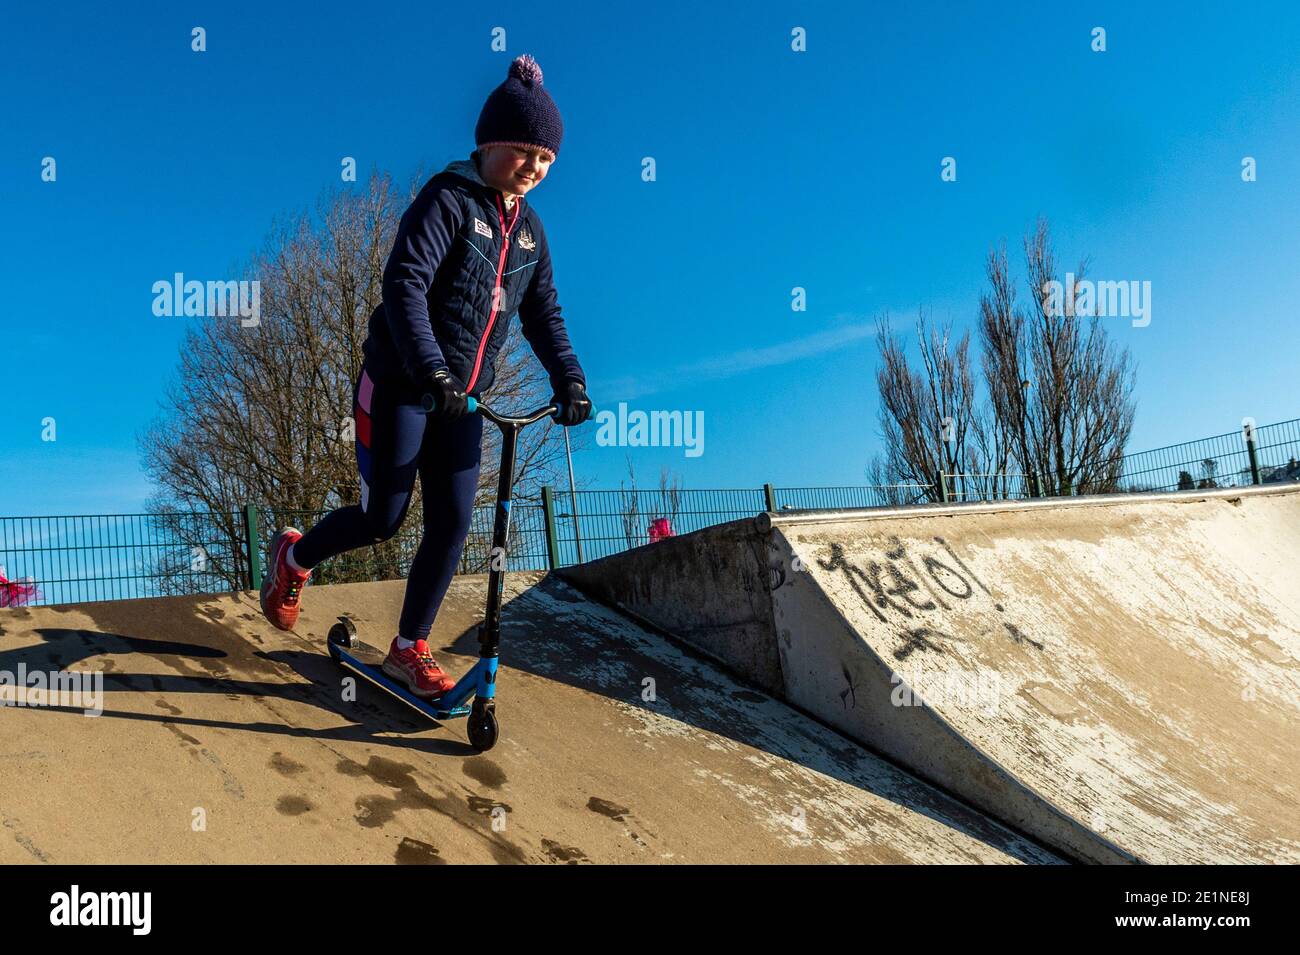 Bandon, West Cork, Irlande. 8 janvier 2021. Malgré la surface glacée et le temps froid, Doireann Leane, 9 ans, de Bandon, a apprécié de jouer sur son scooter dans le parc de skate de Bandon aujourd'hui. Crédit : AG News/Alay Live News Banque D'Images